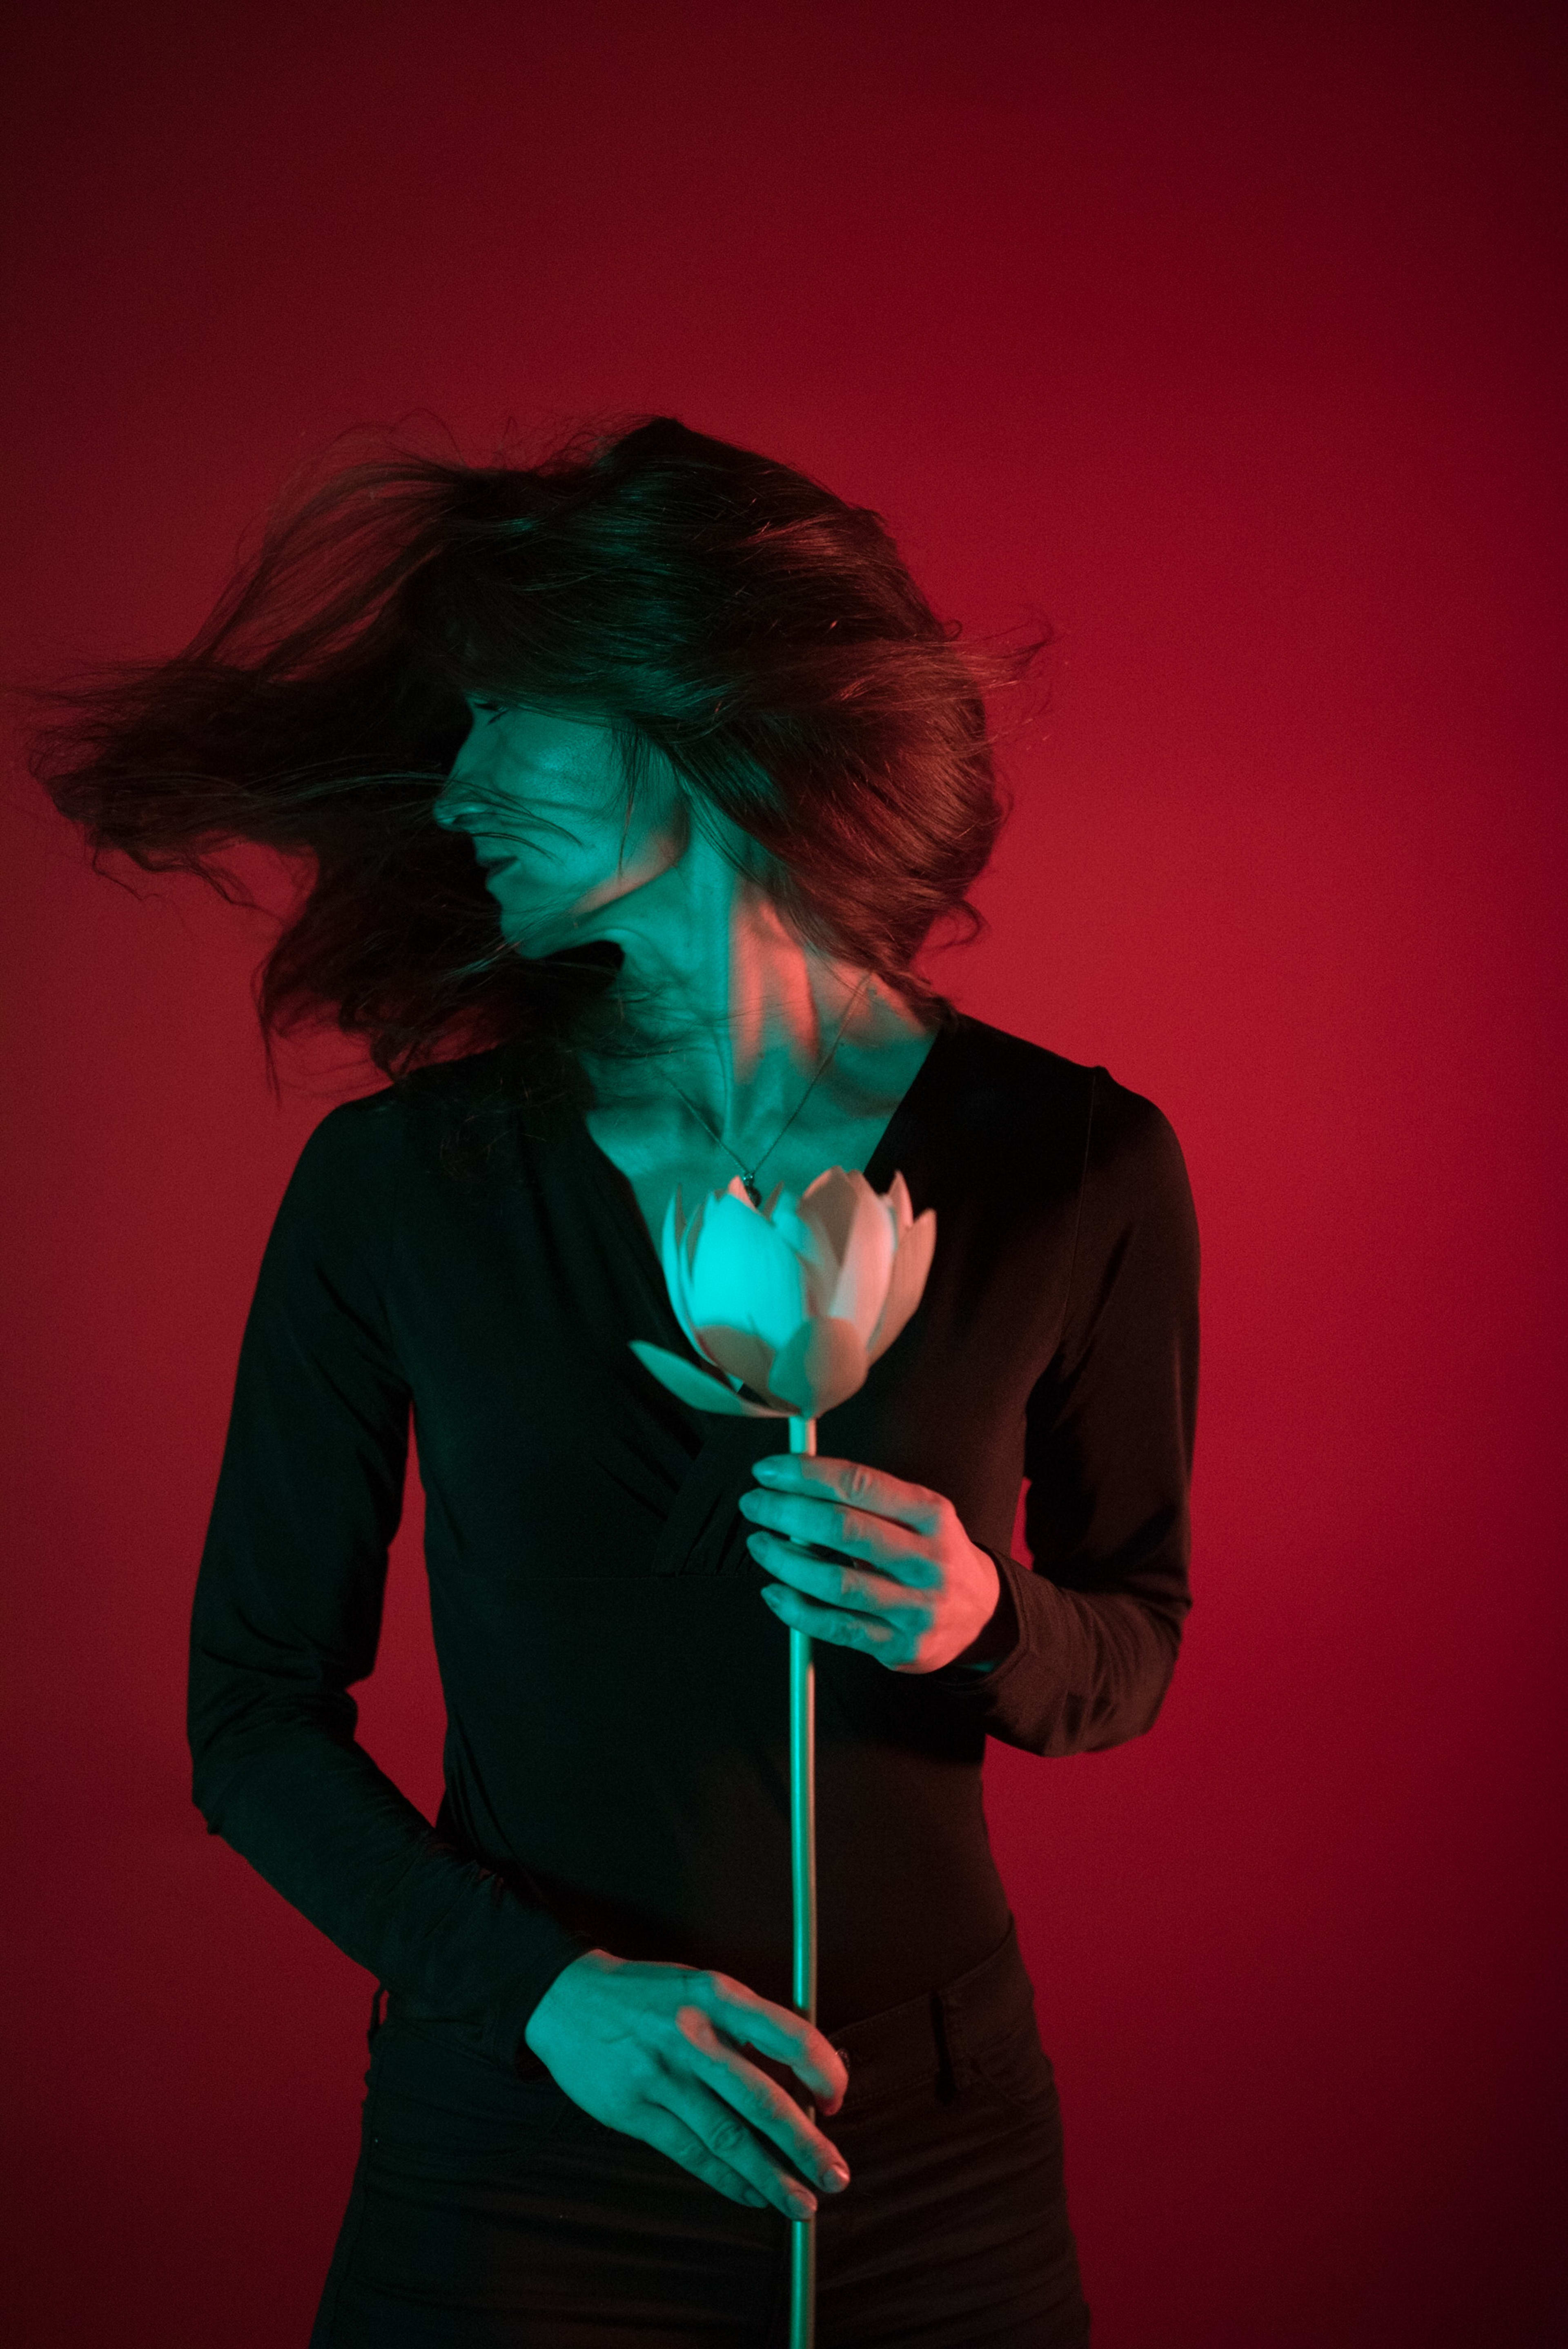 Una mujer de pelo largo y oscuro sosteniendo una flor sobre fondo rojo.